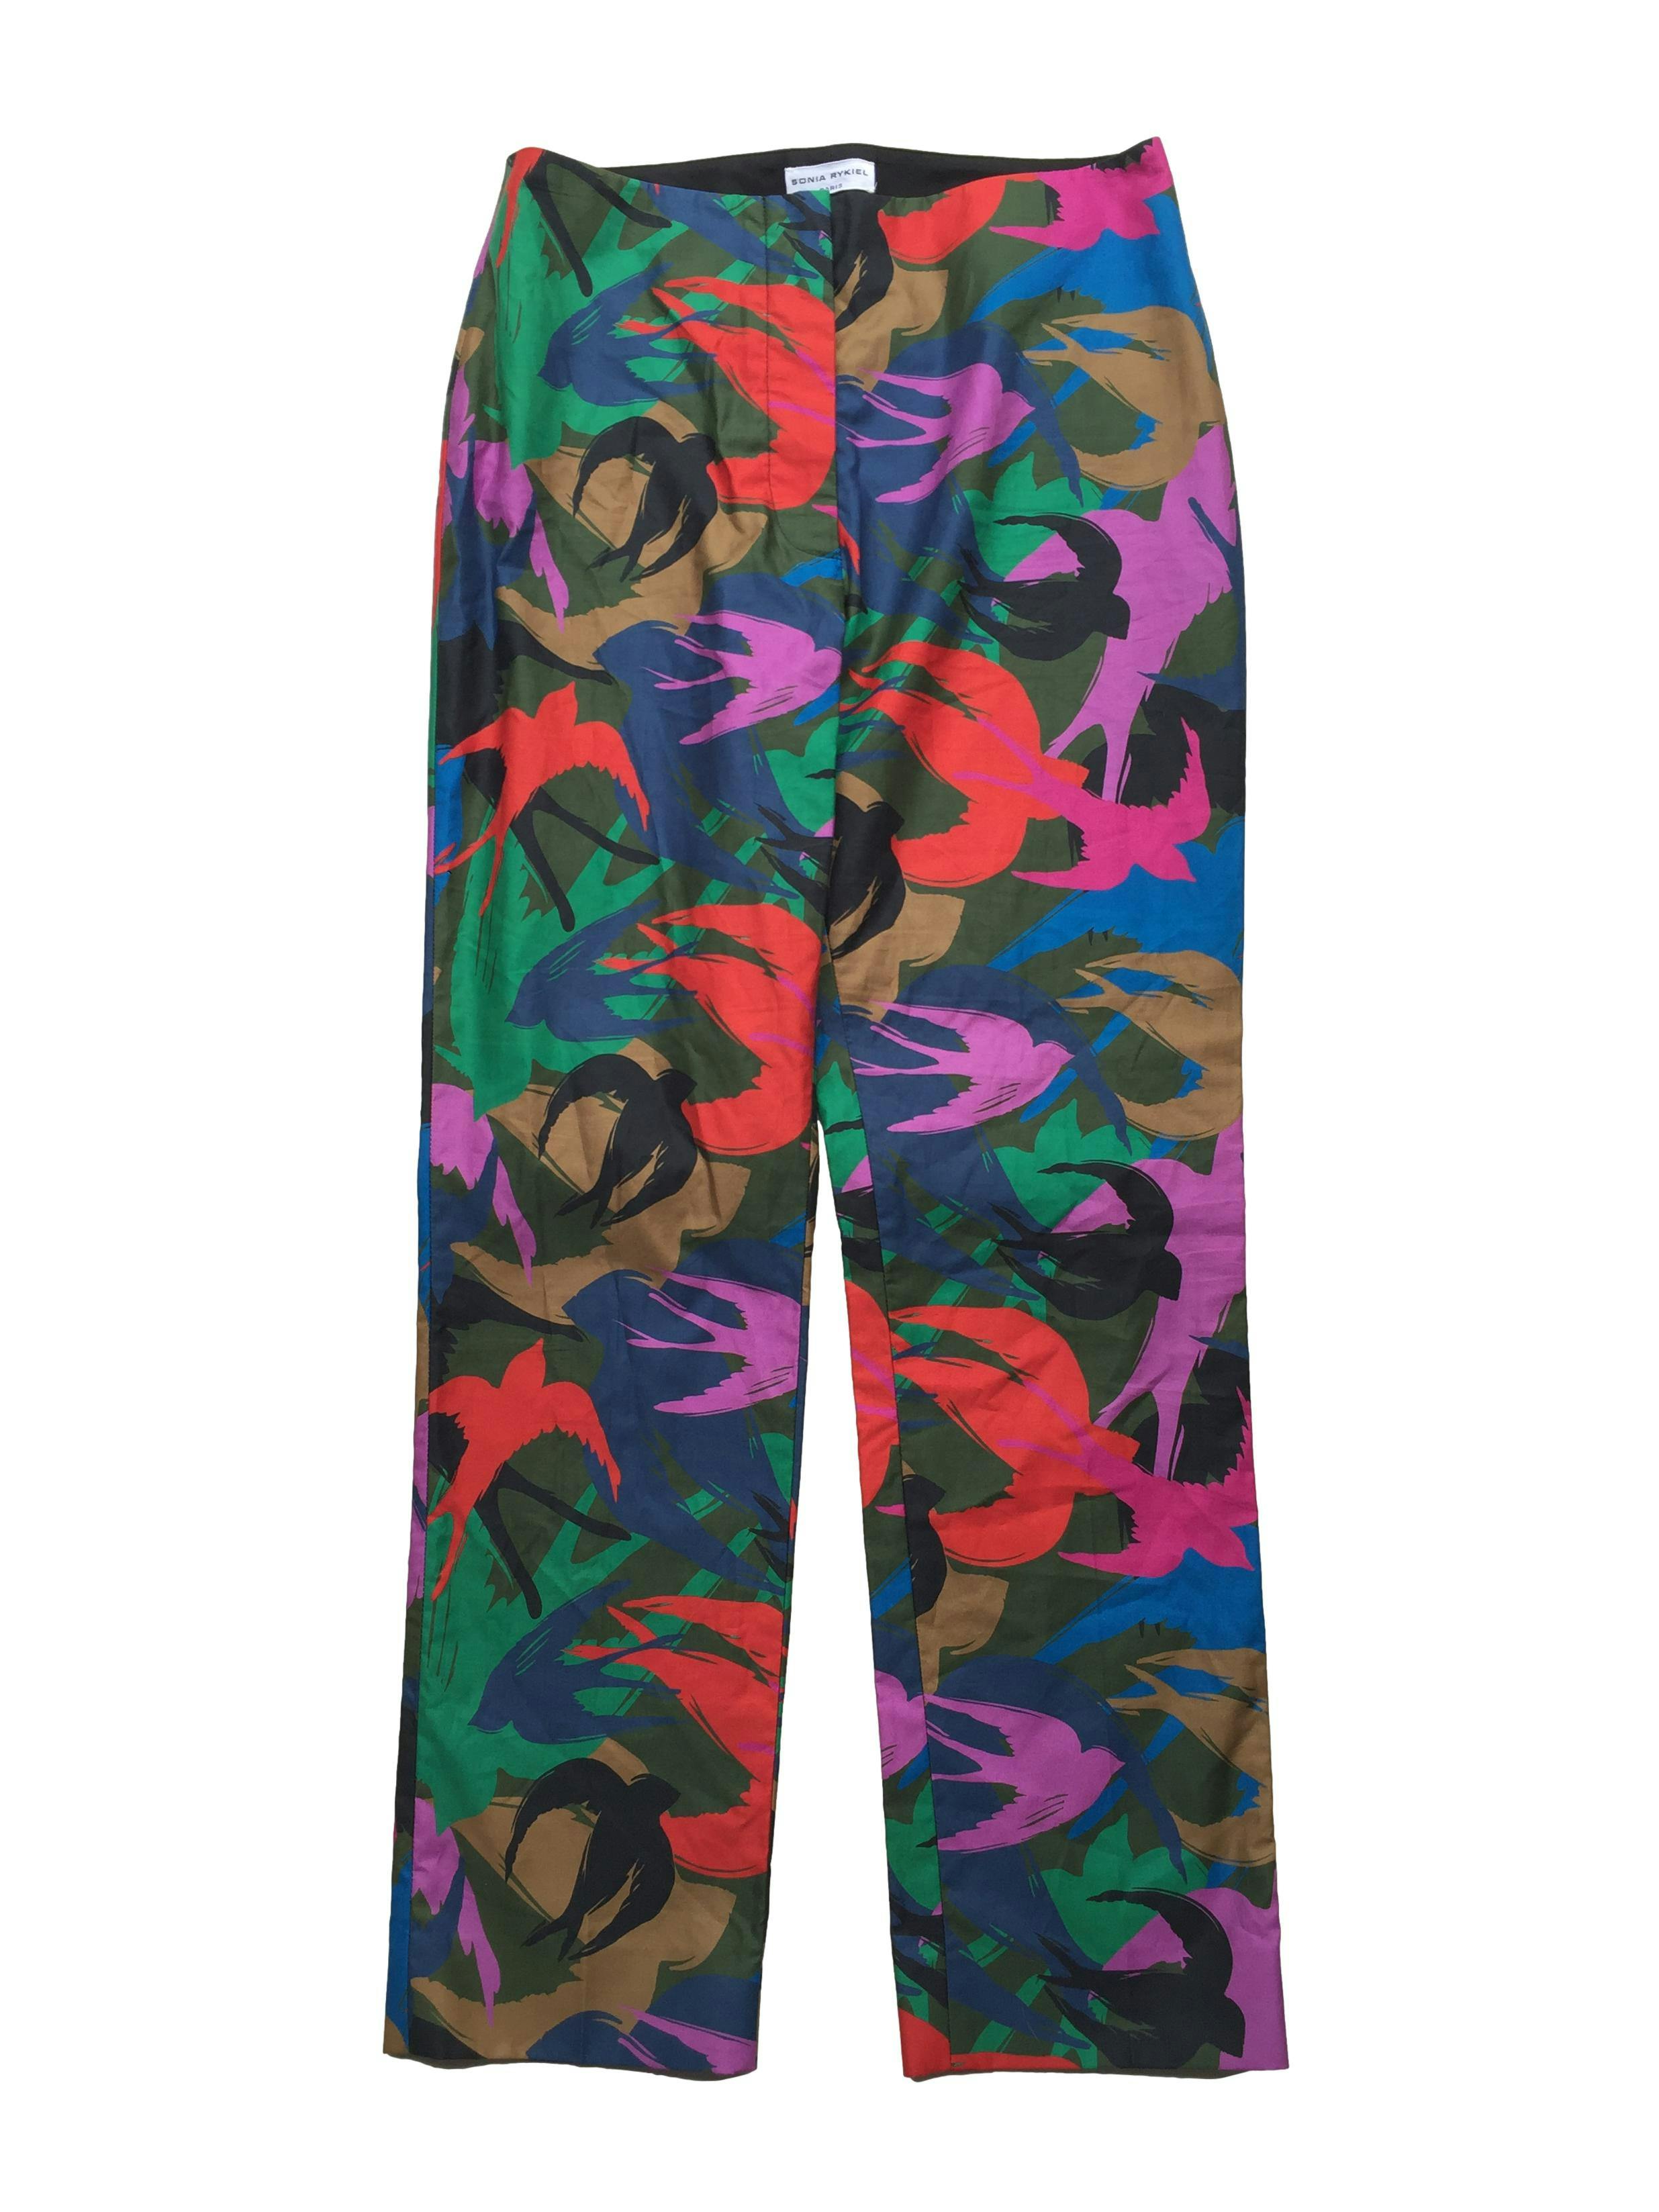 Pantalón Sonia Rykiel slim fit azul con estampado de aves multicolor, tela fresca 100% algodón. Precio original S/600. Cintura 70cm, Largo 93cm.